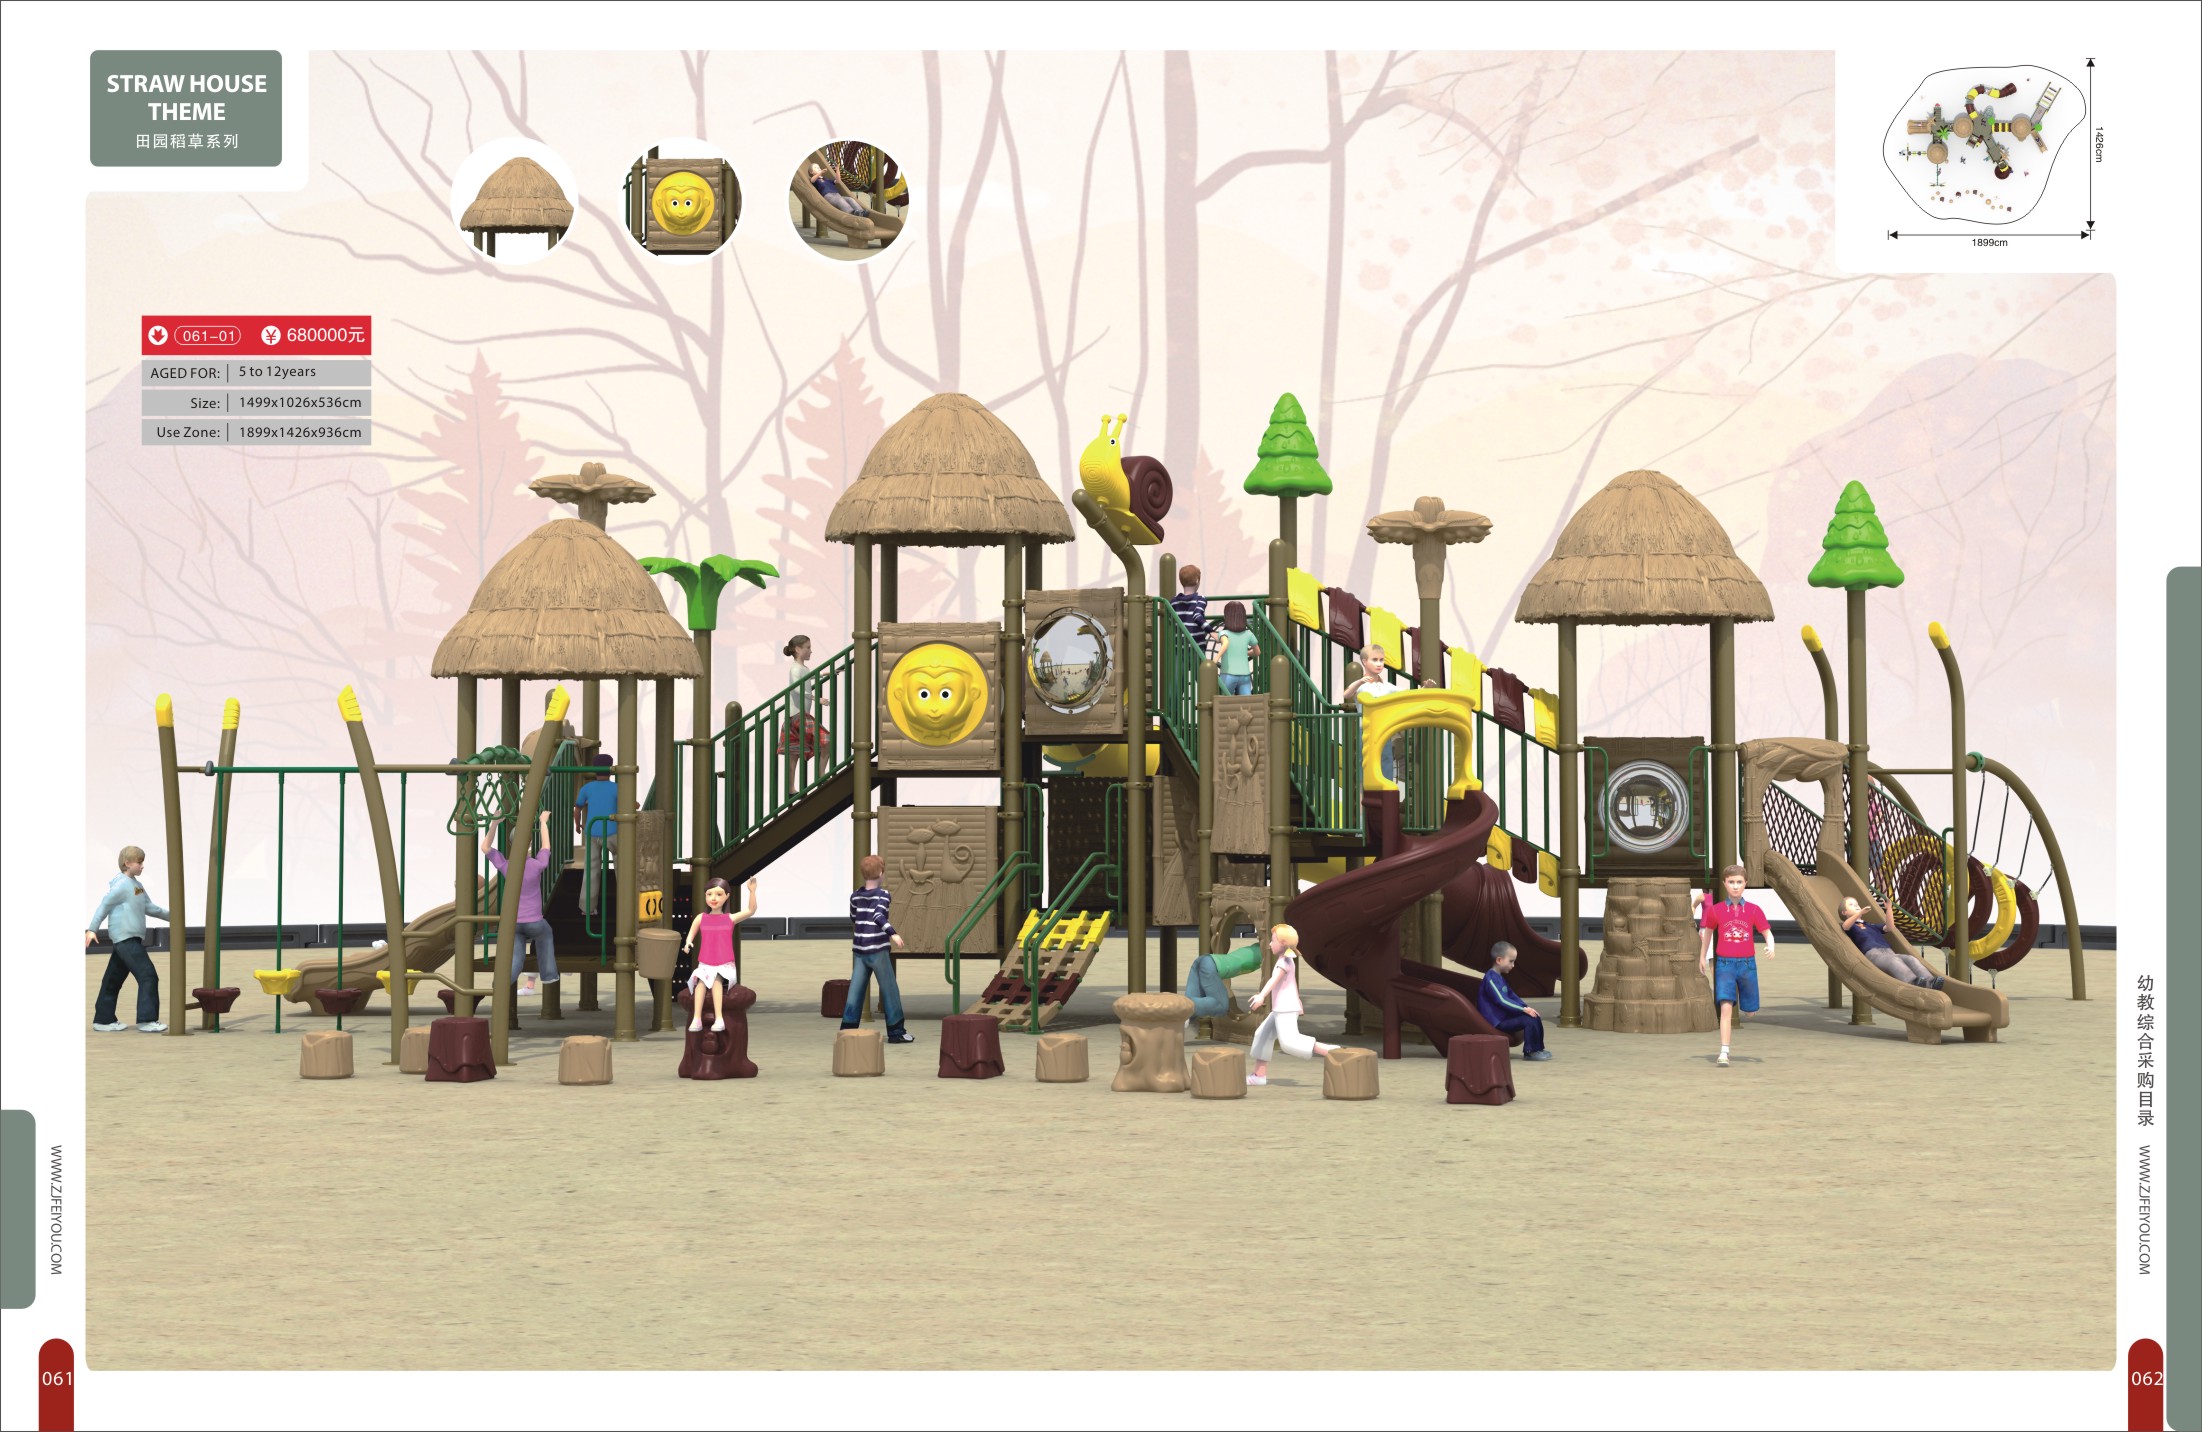 户外儿童主题公园 幼儿园墙面玩具生产厂家 亲子乐园设备 儿童拓展设备3